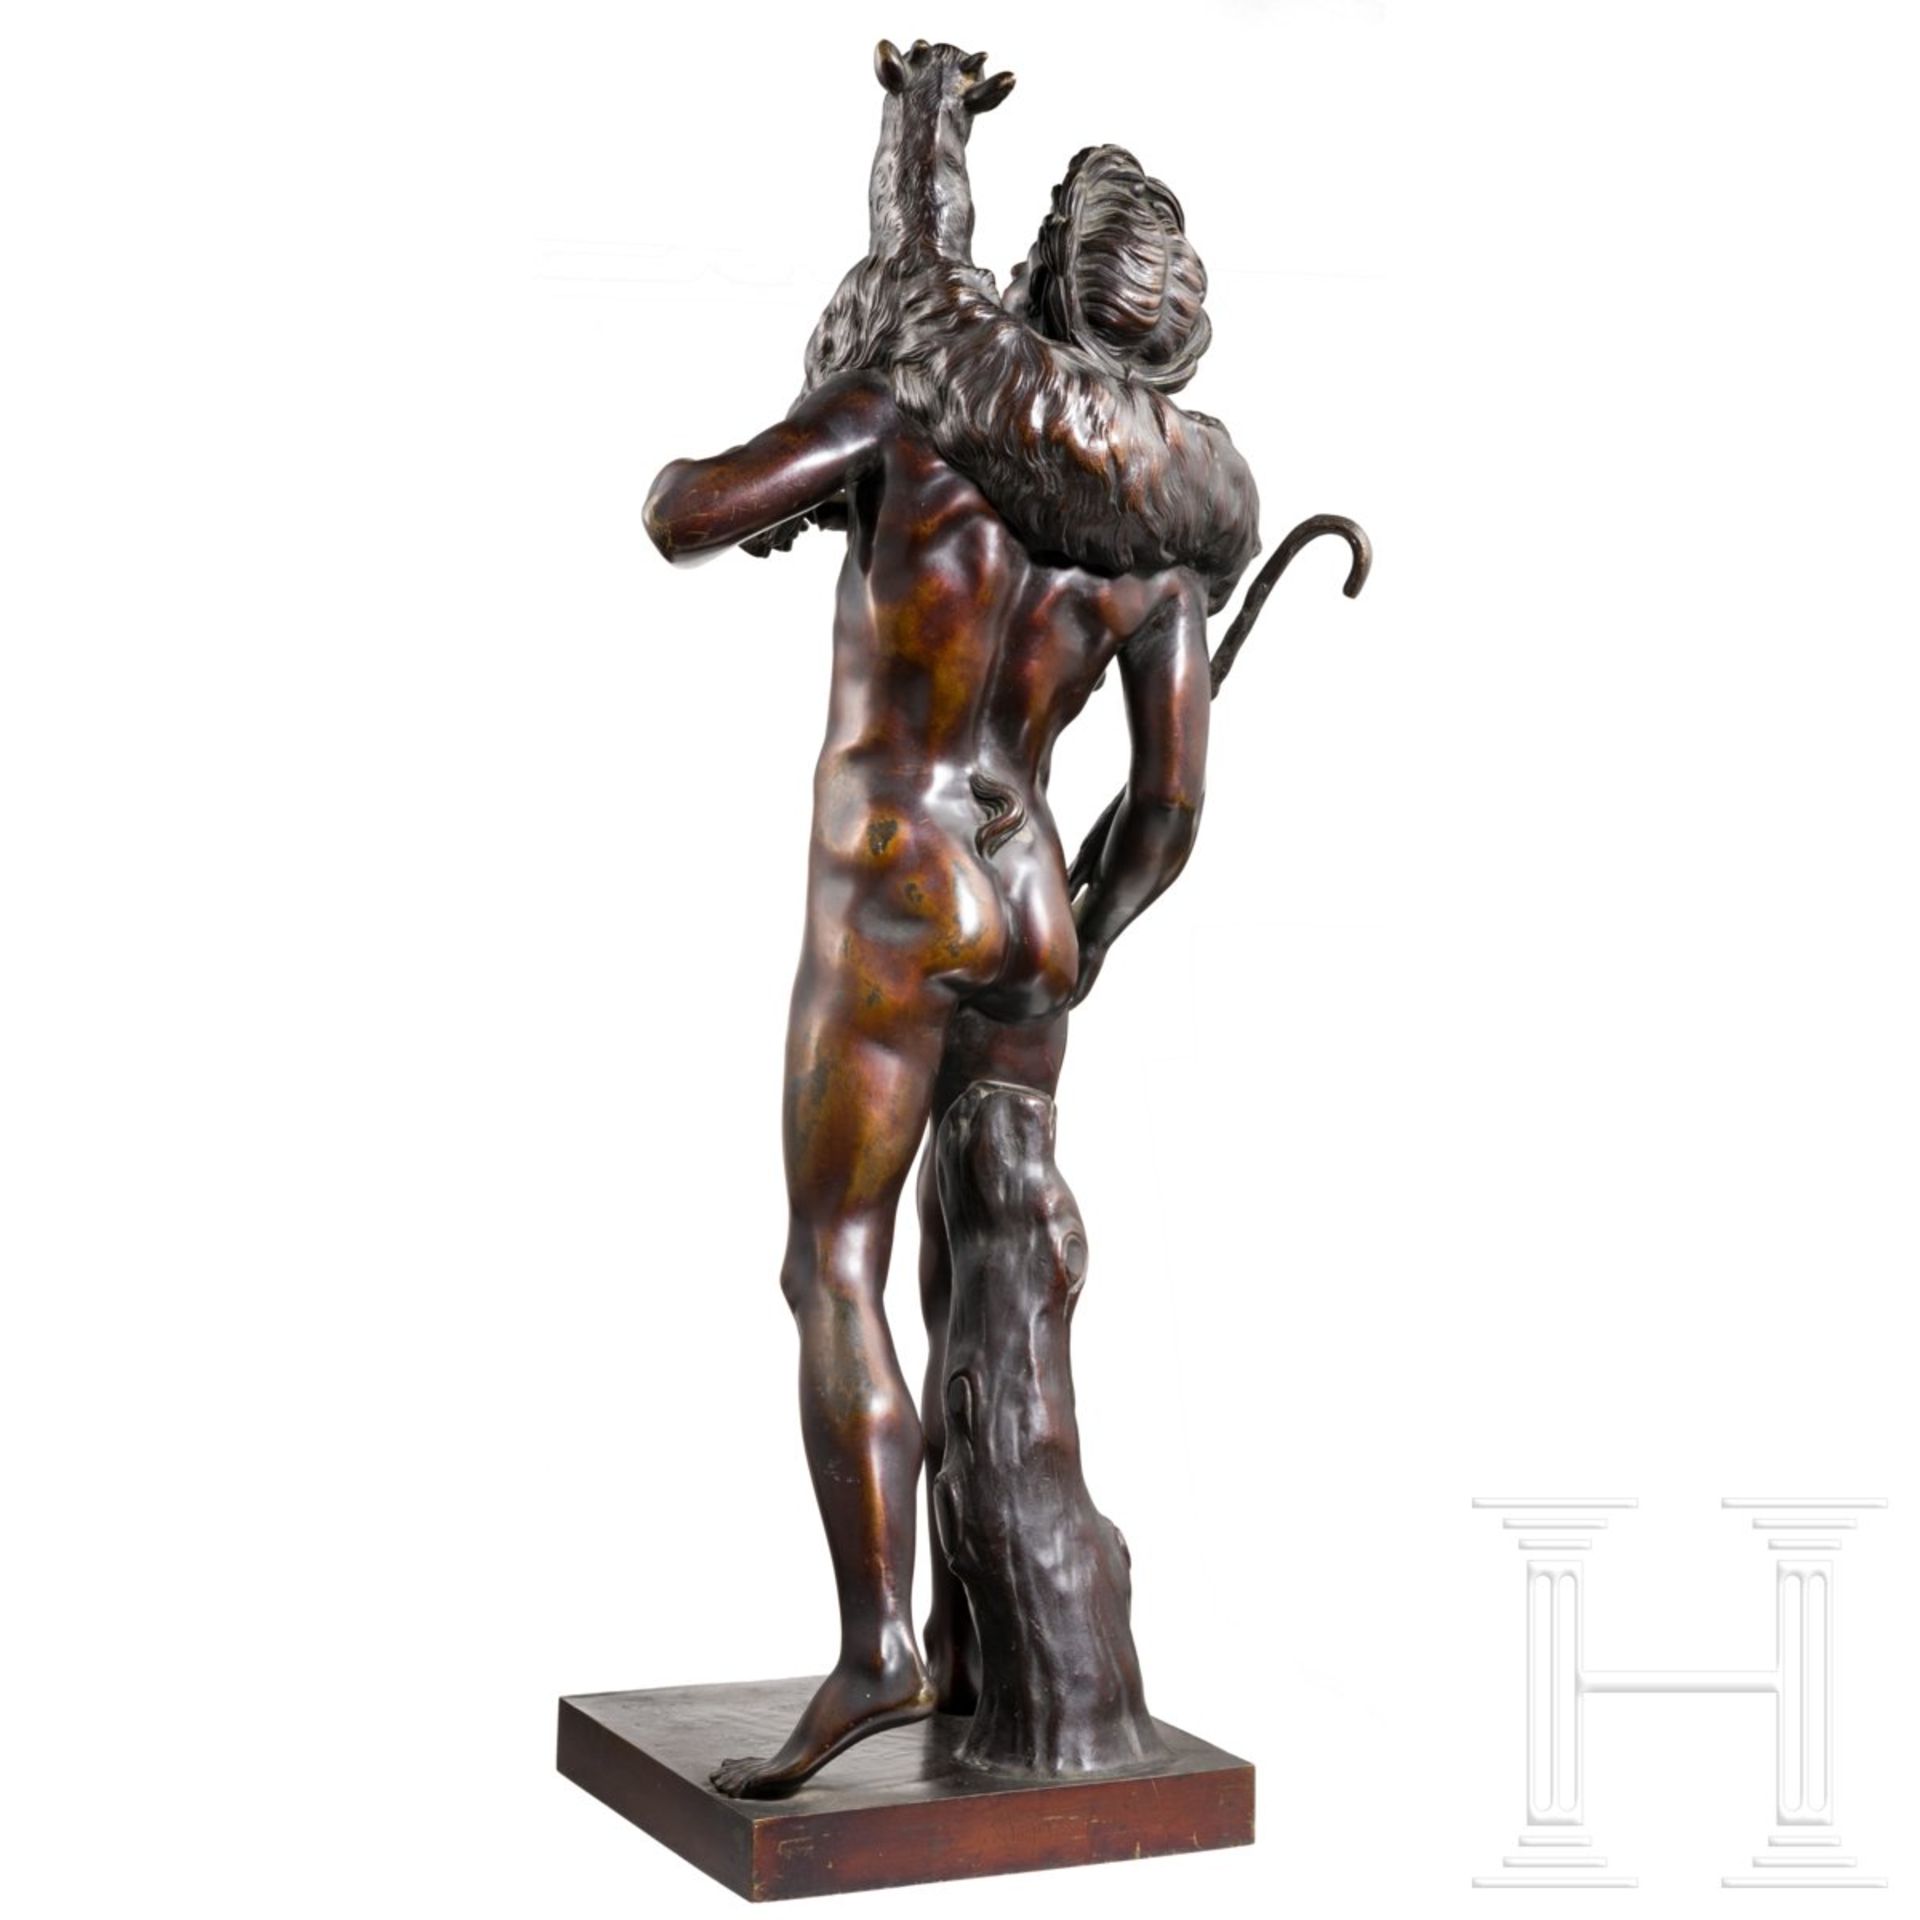 Klassizistische Grand Tour-Skulptur eines Fauns als Hirte, Frankreich, 19. Jhdt.Nach dem Modell - Bild 3 aus 3